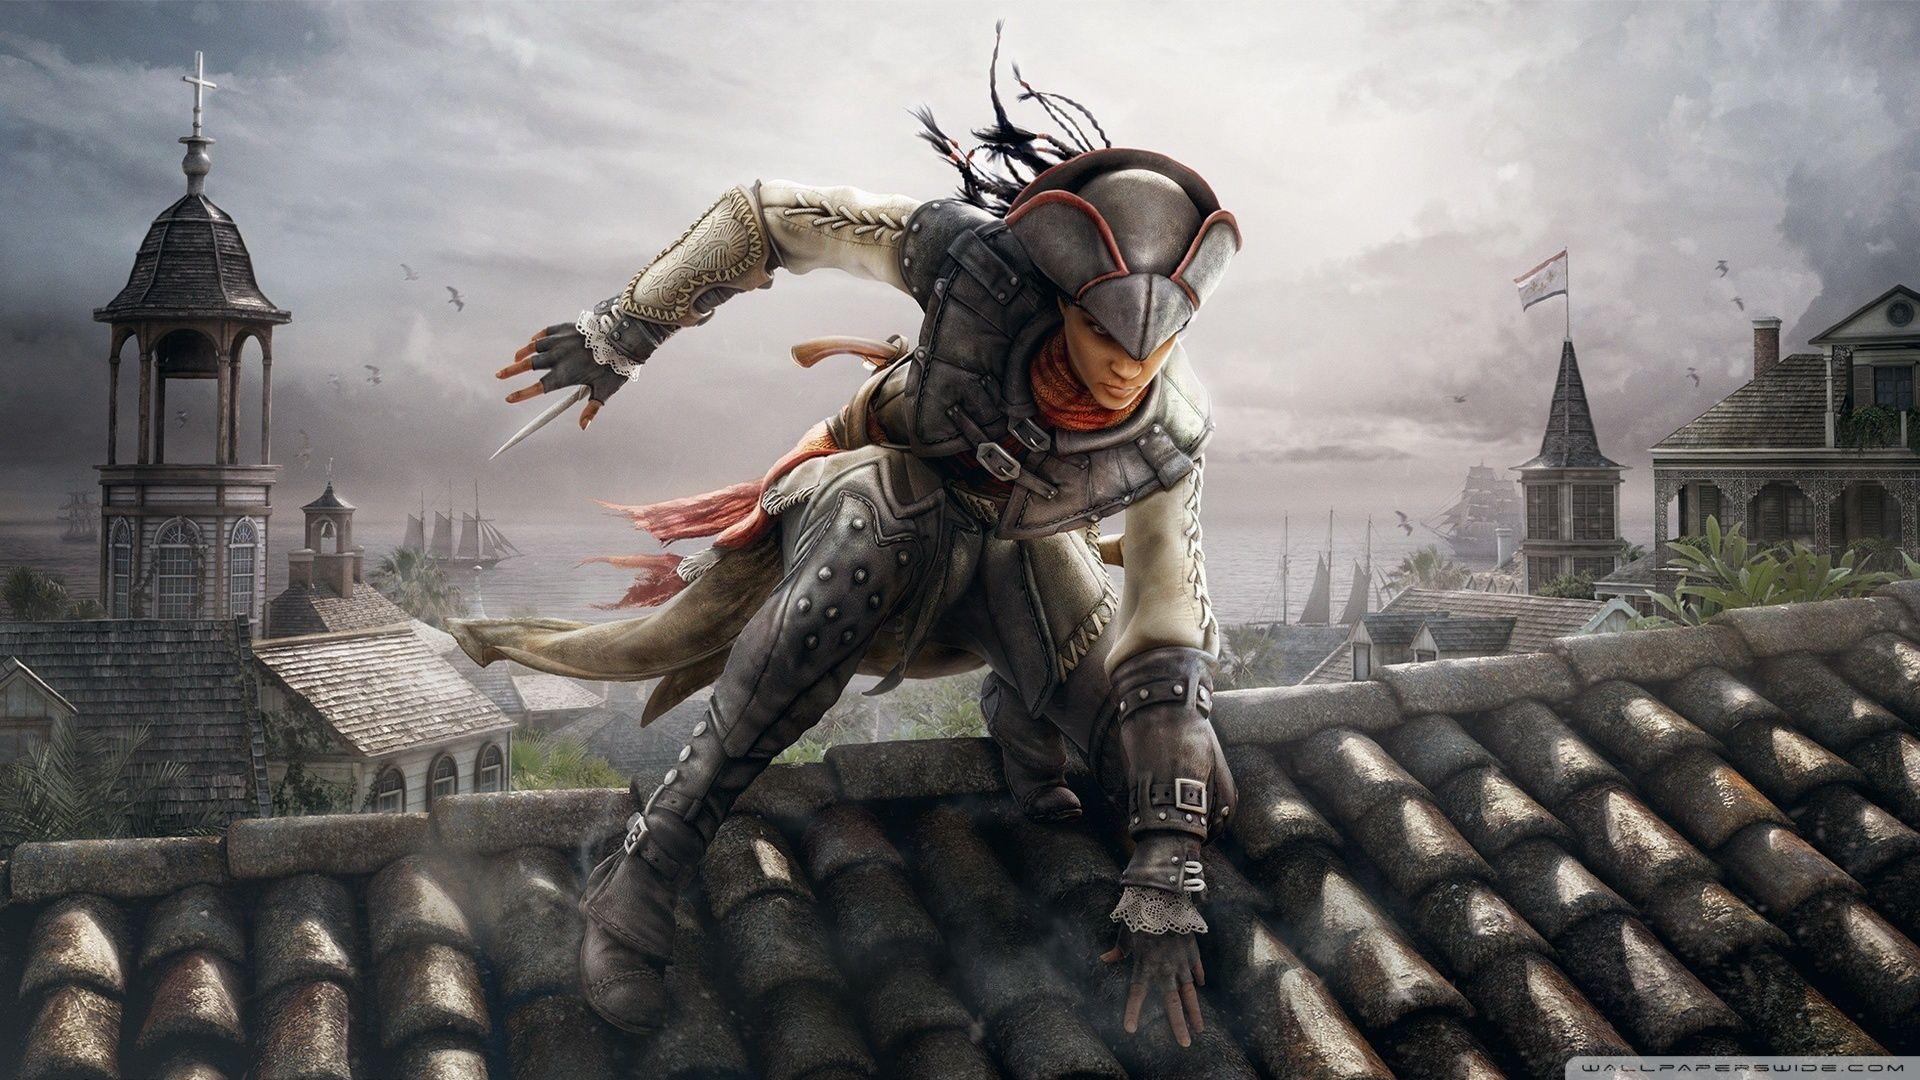 Assassins Creed III: Liberation Ultra HD Desktop Background Wallpaper for 4K UHD TV, Widescreen & UltraWide Desktop & Laptop, Tablet